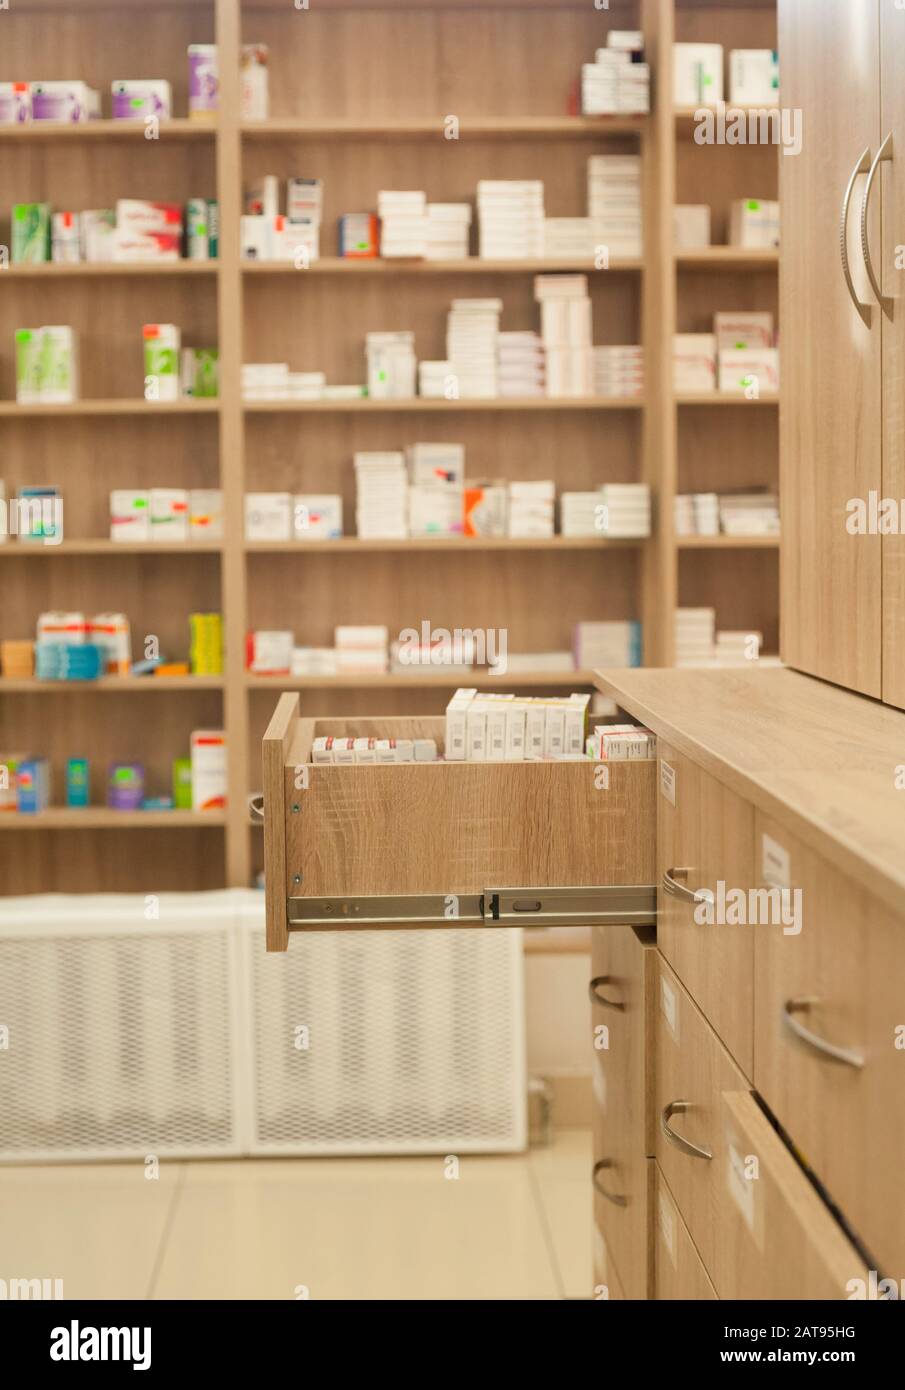 Offene Schachtel mit Medikamenten in einer Apotheke im Hintergrund von Regalen mit Tablettenpackungen und Kapseln am Tag Stockfoto